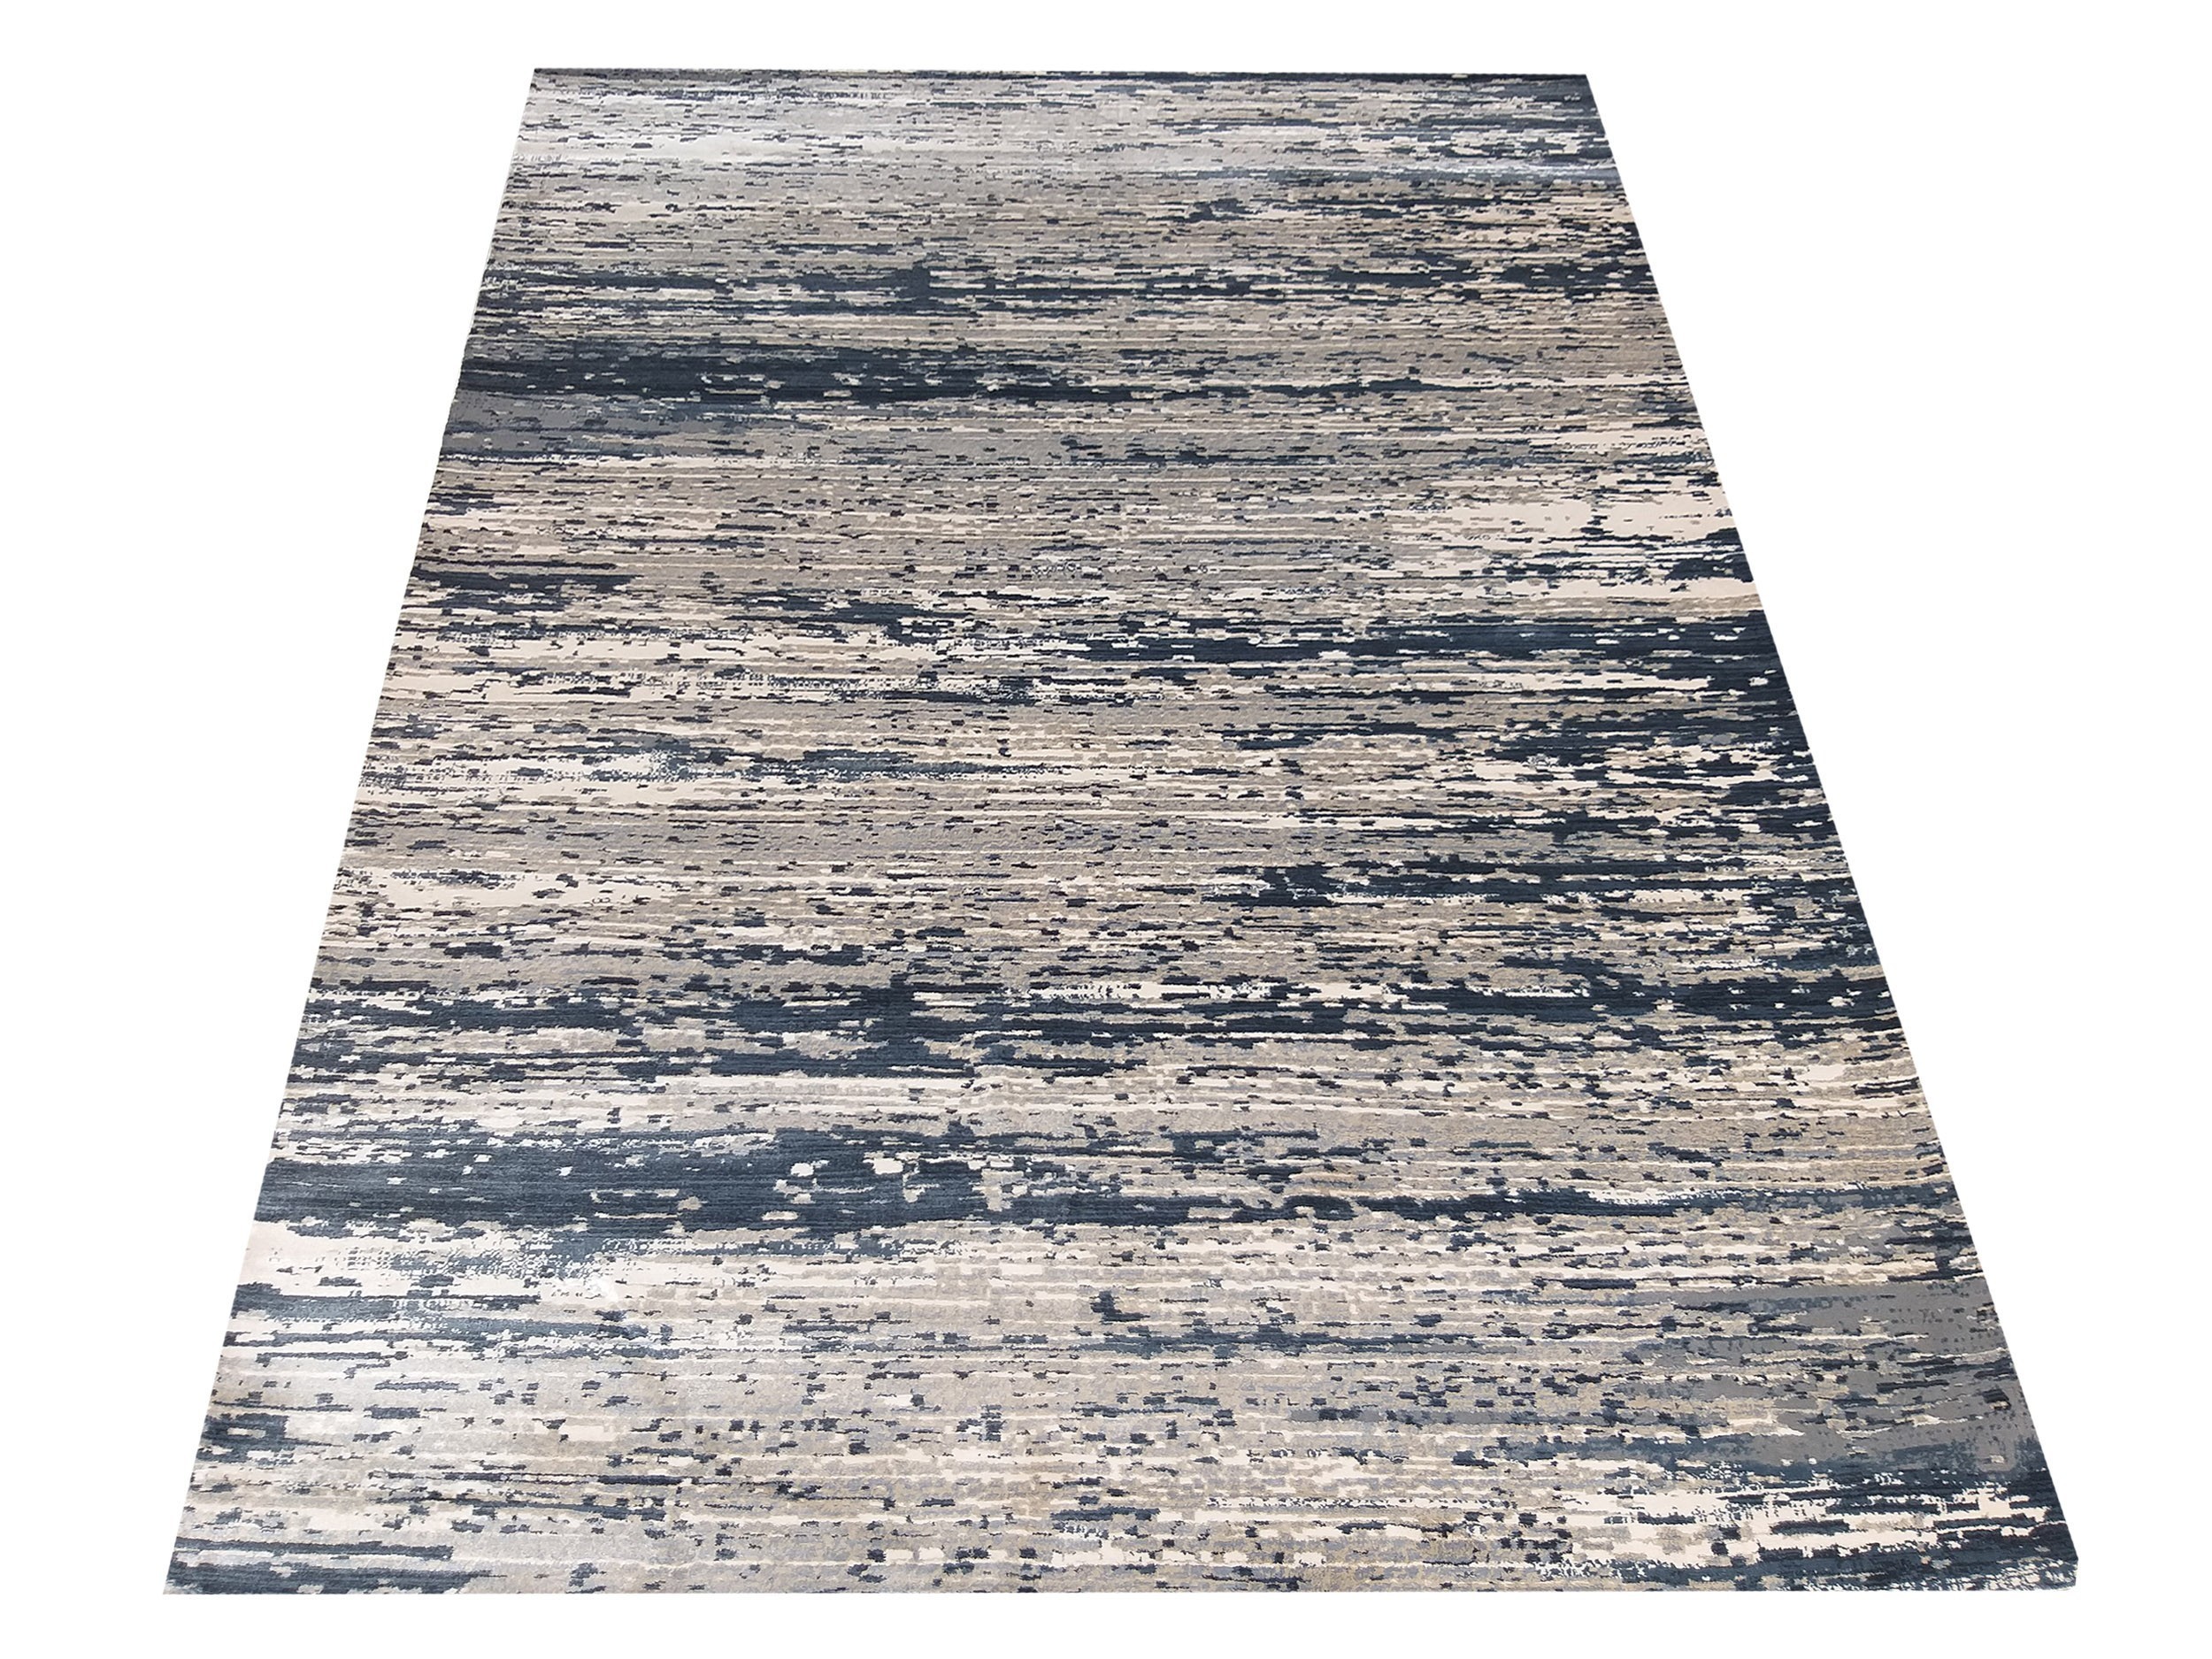 Designový modrý koberec s melírováním v béžové barvě